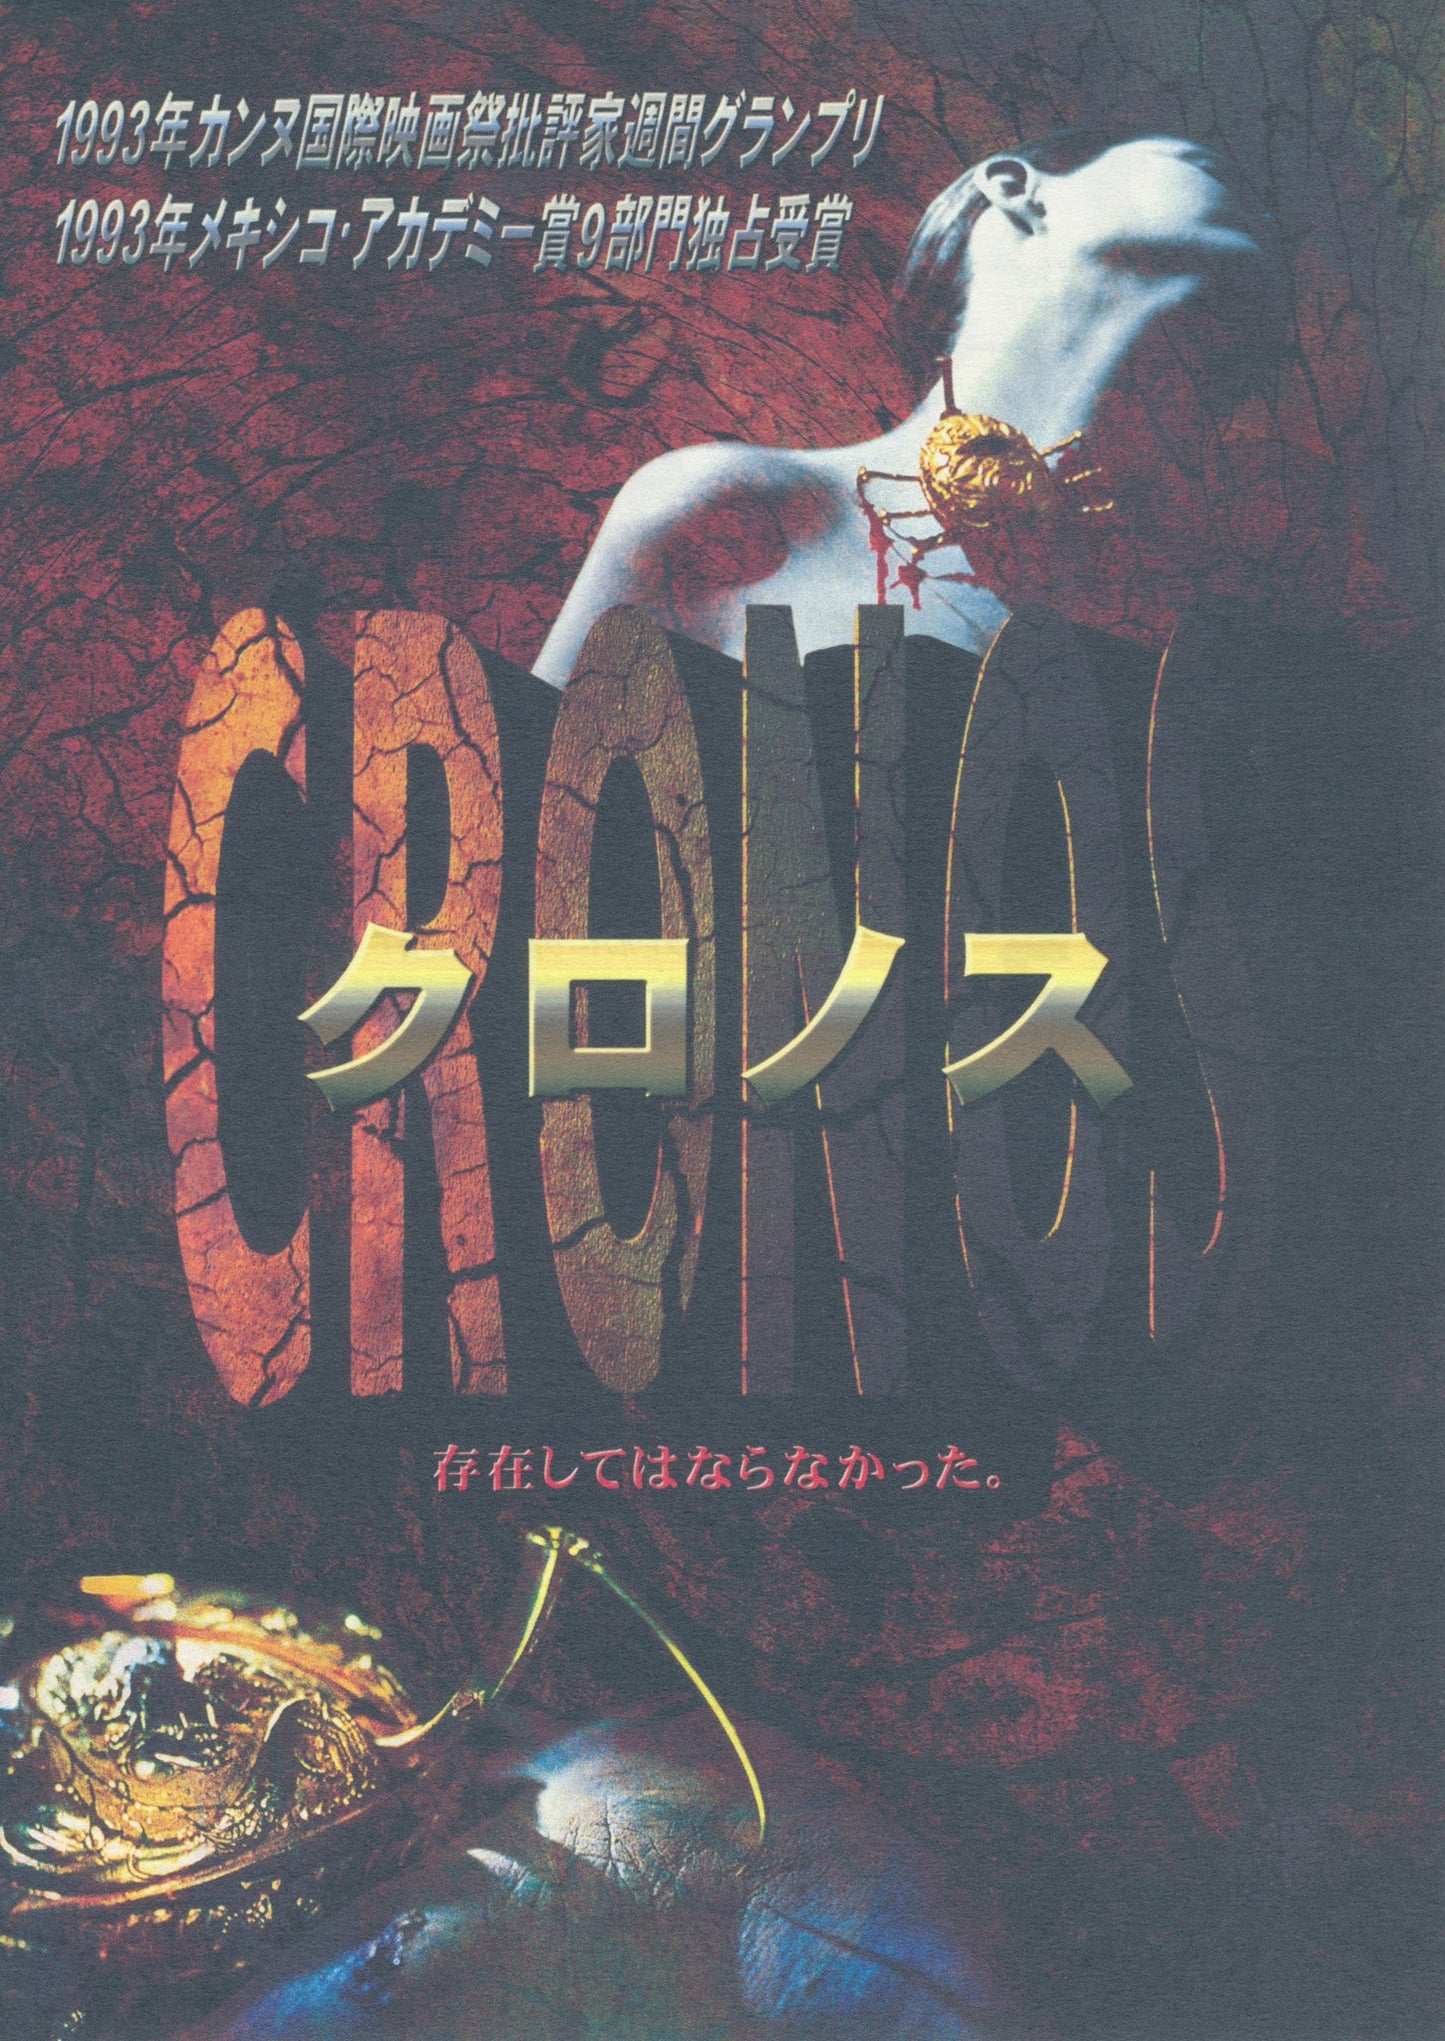 CHRONOS  - Japanese chirashi